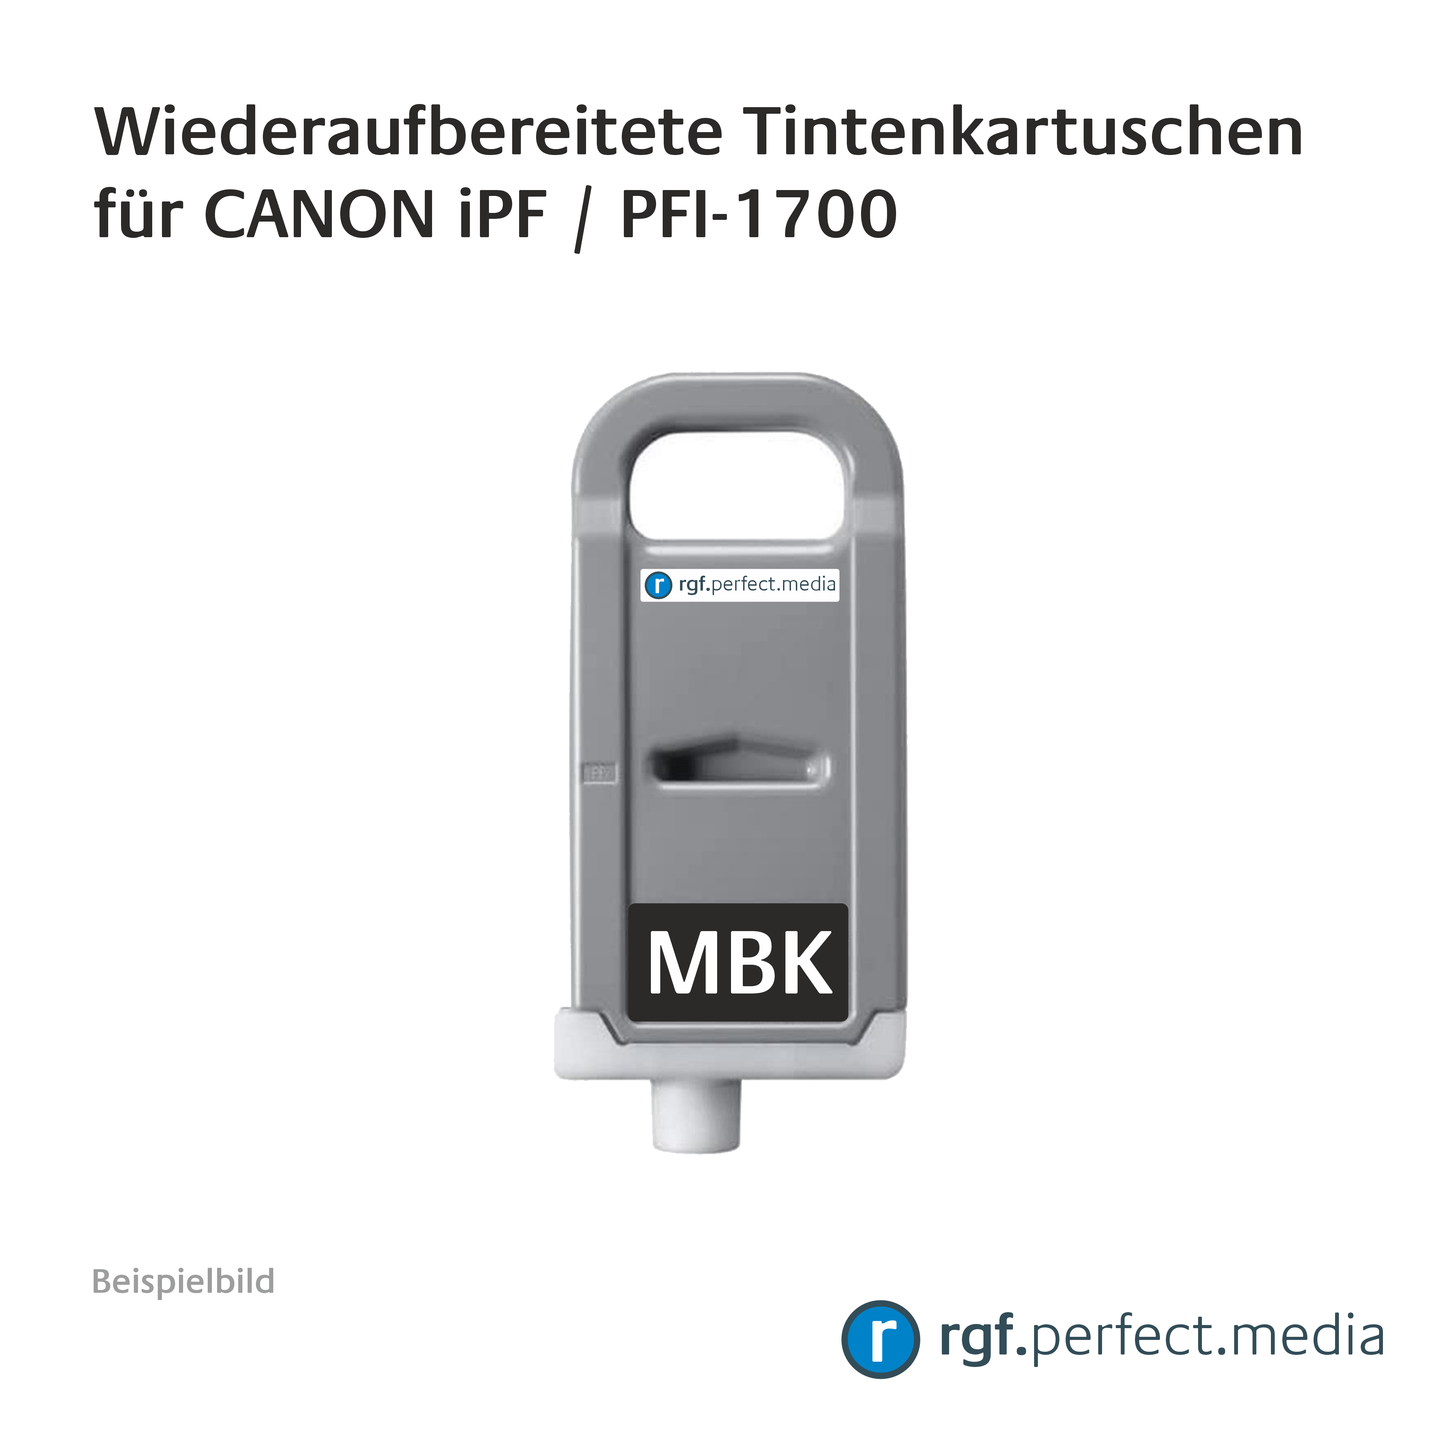 Wiederaufbereitete Tintenkartuschen No.1700 Serie kompatibel für Canon iPF - Serie